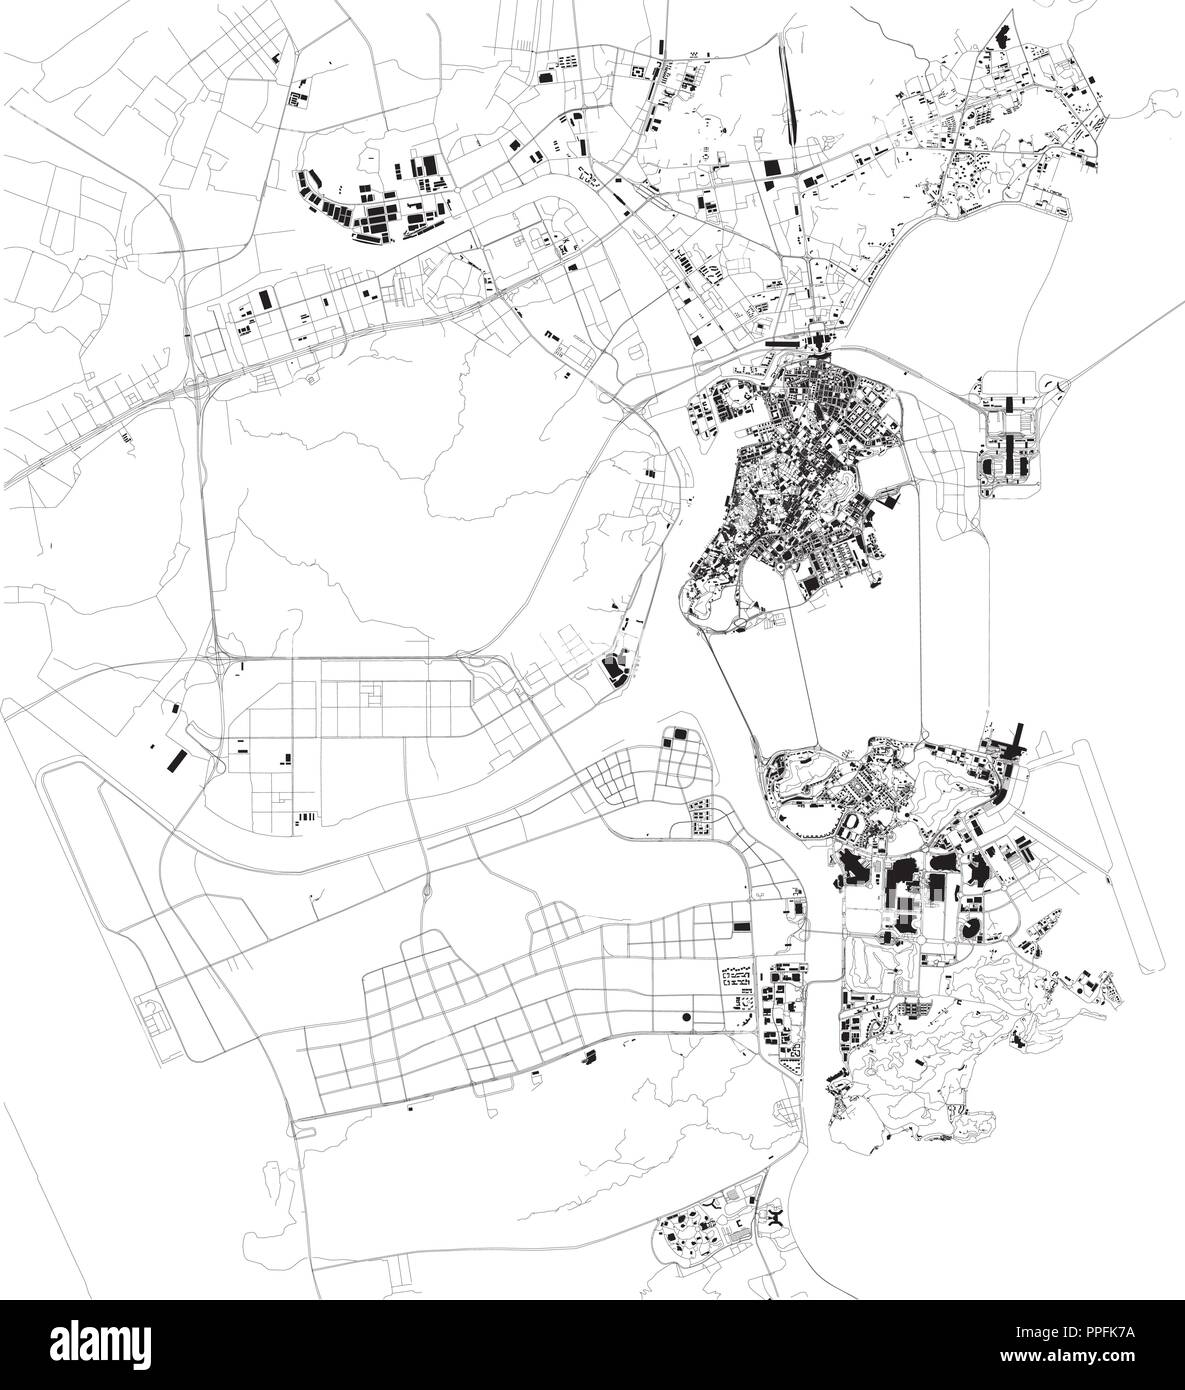 La carte de Macau, Macao, la vue satellite, carte en noir et blanc. Annuaire de la rue et plan de la ville. Chine Illustration de Vecteur